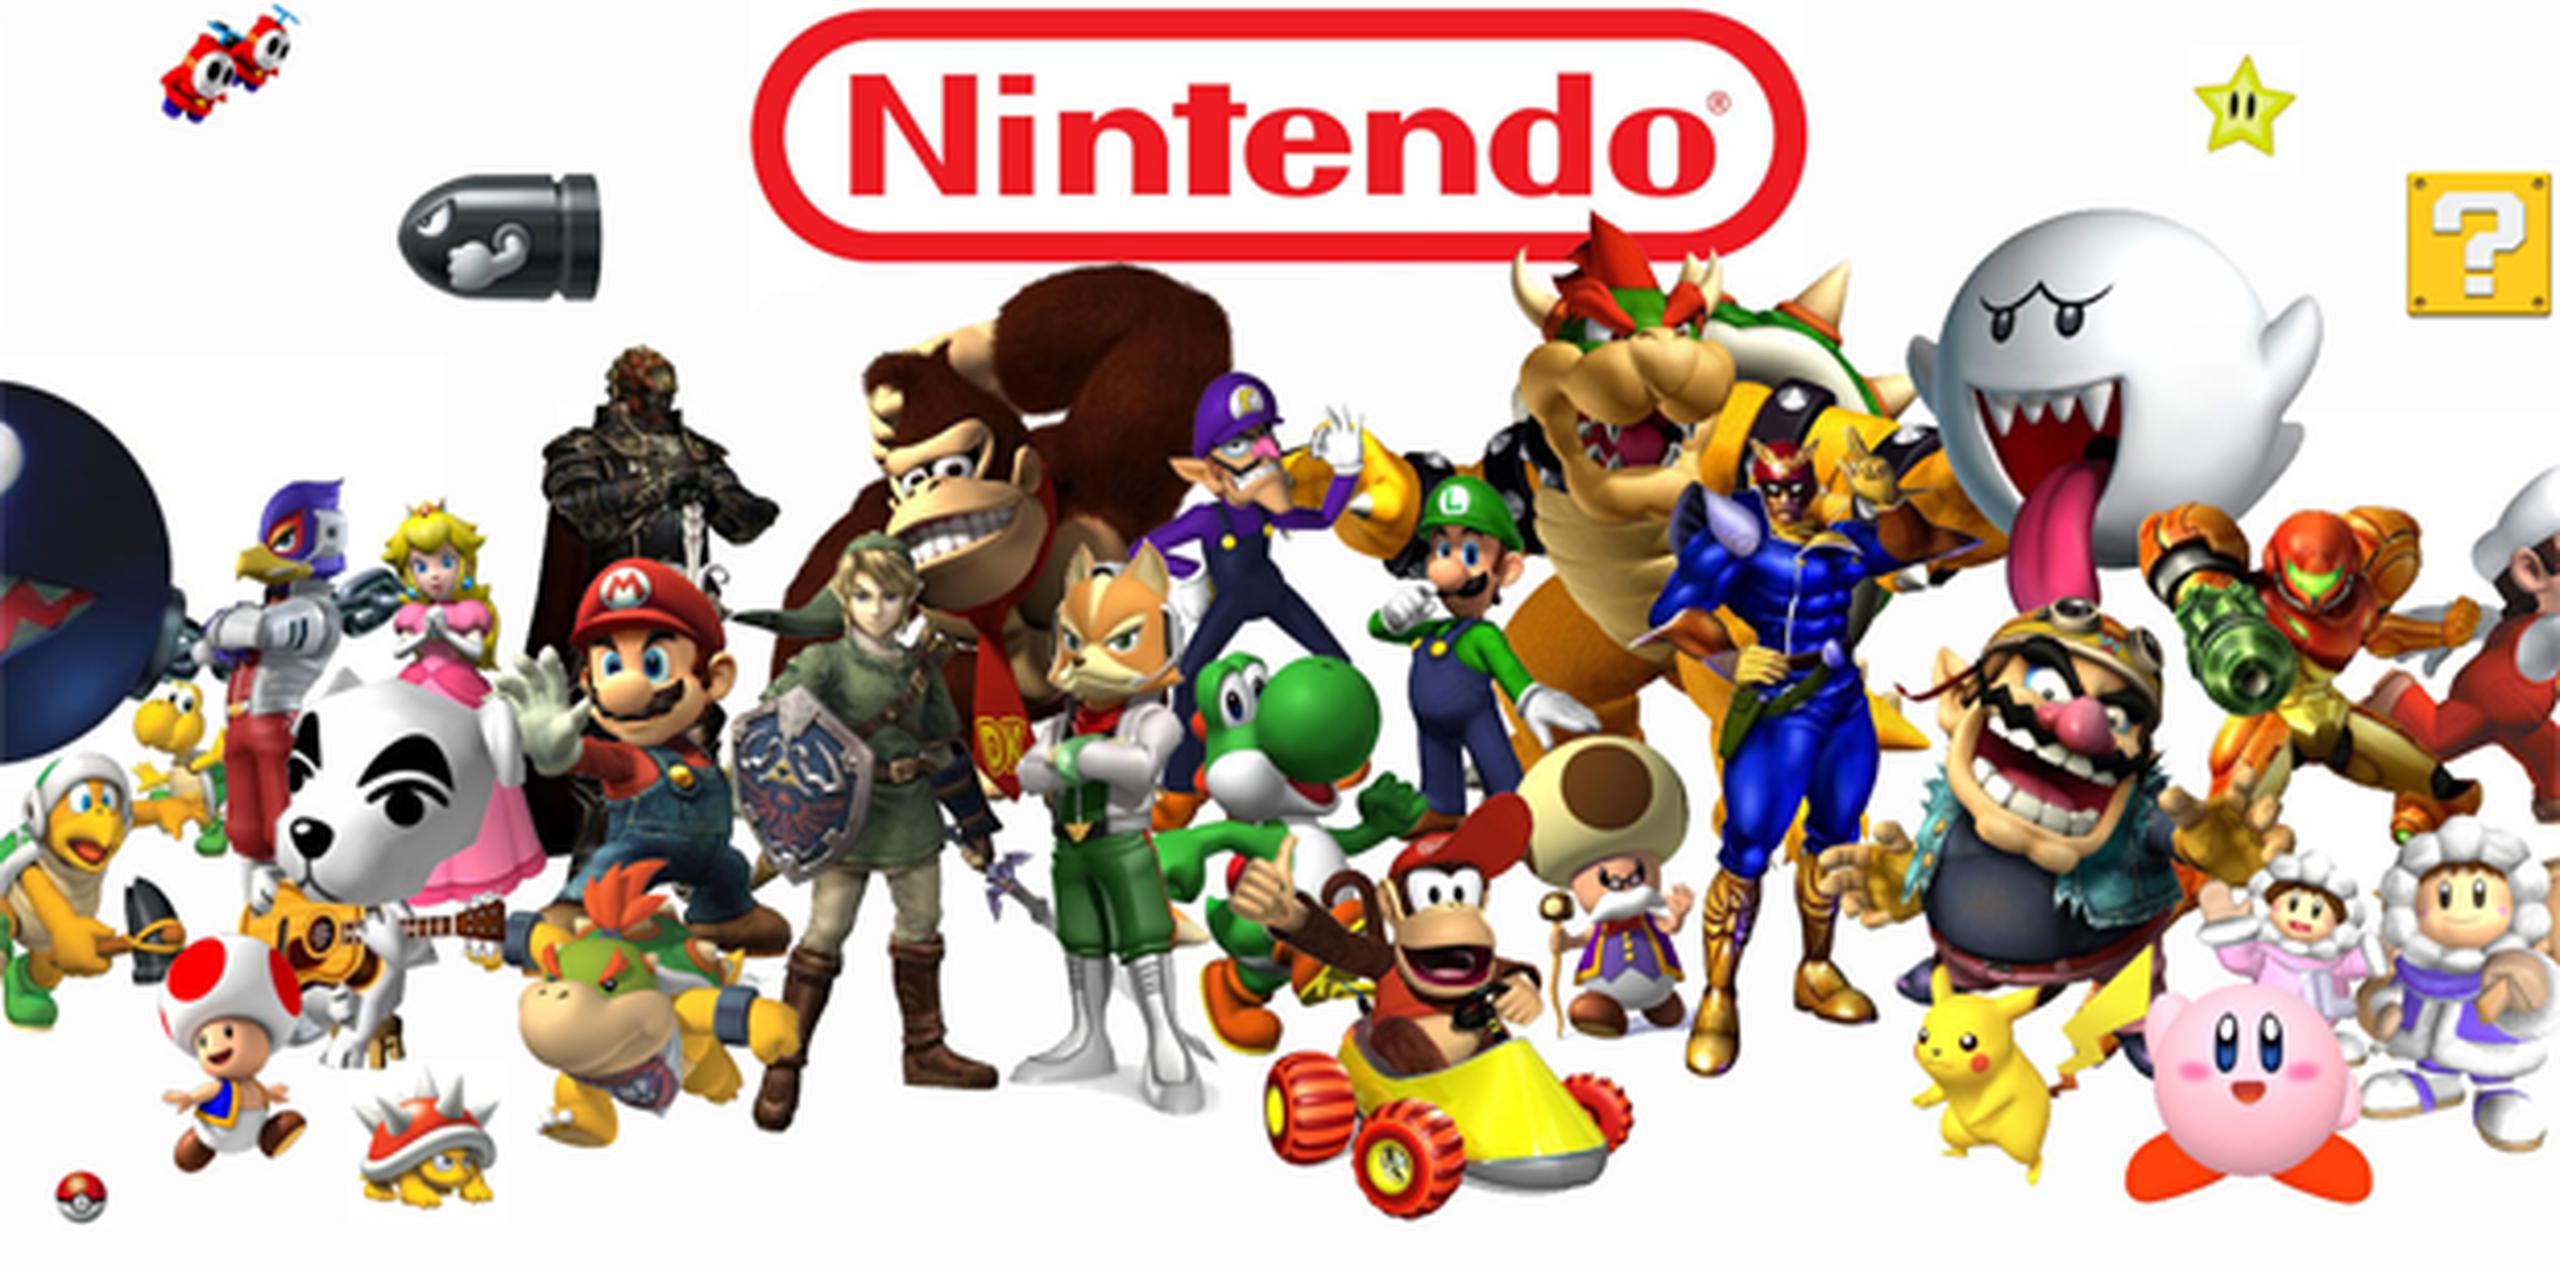 Estos personajes estaban fuertemente protegidos por Nintendo, apareciendo solo en plataformas de la marca como la videoconsola domestica Wii y la consola portátil 3DS.